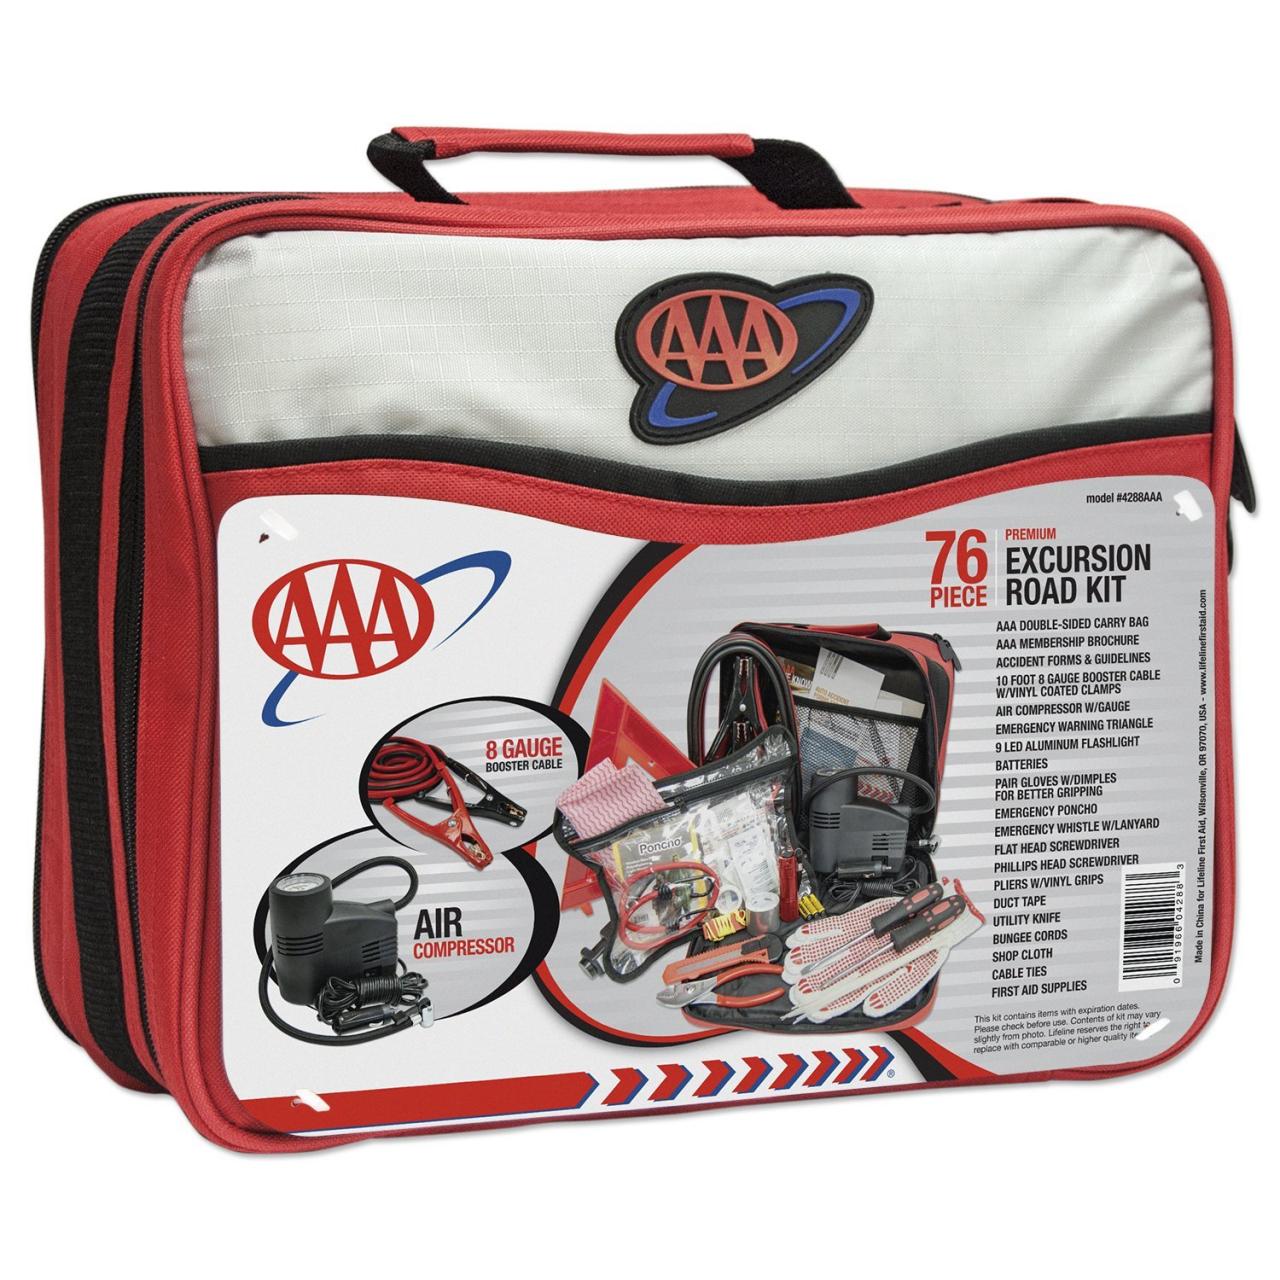 AAA (4388AAA) 76-Piece Excursion Road Kit – Pointer Safety Kit